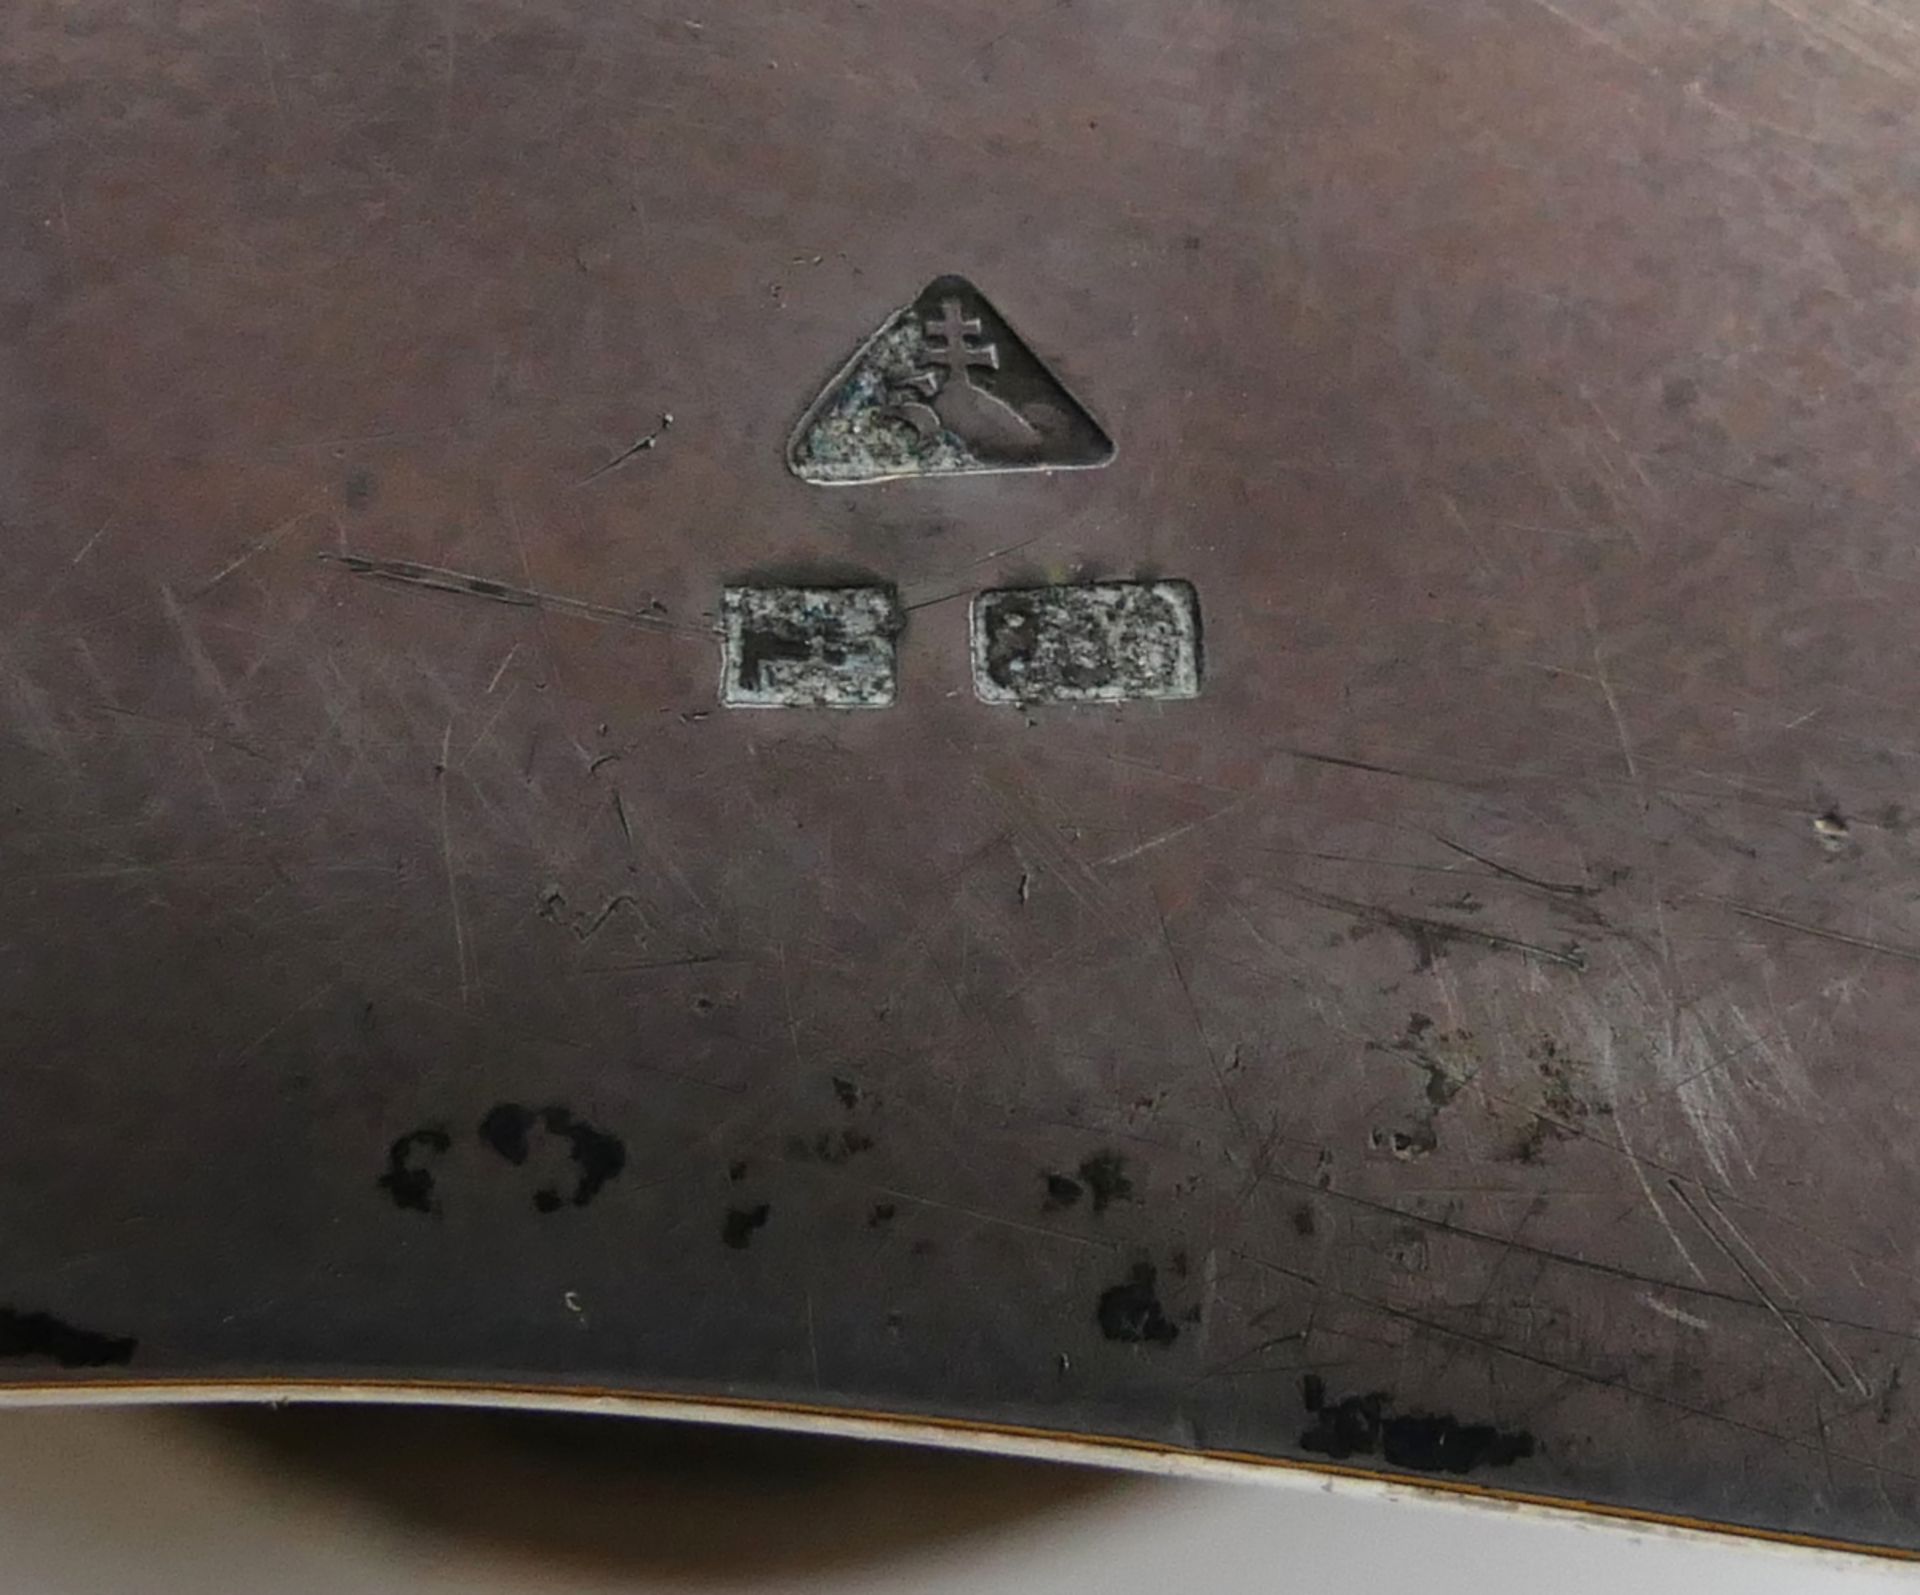 1 Deckeldose gepunzt Silber 800 Tschechoslowakei 1929-1941, mit konvex-konkav geschwungenem Rand, ca - Image 3 of 3